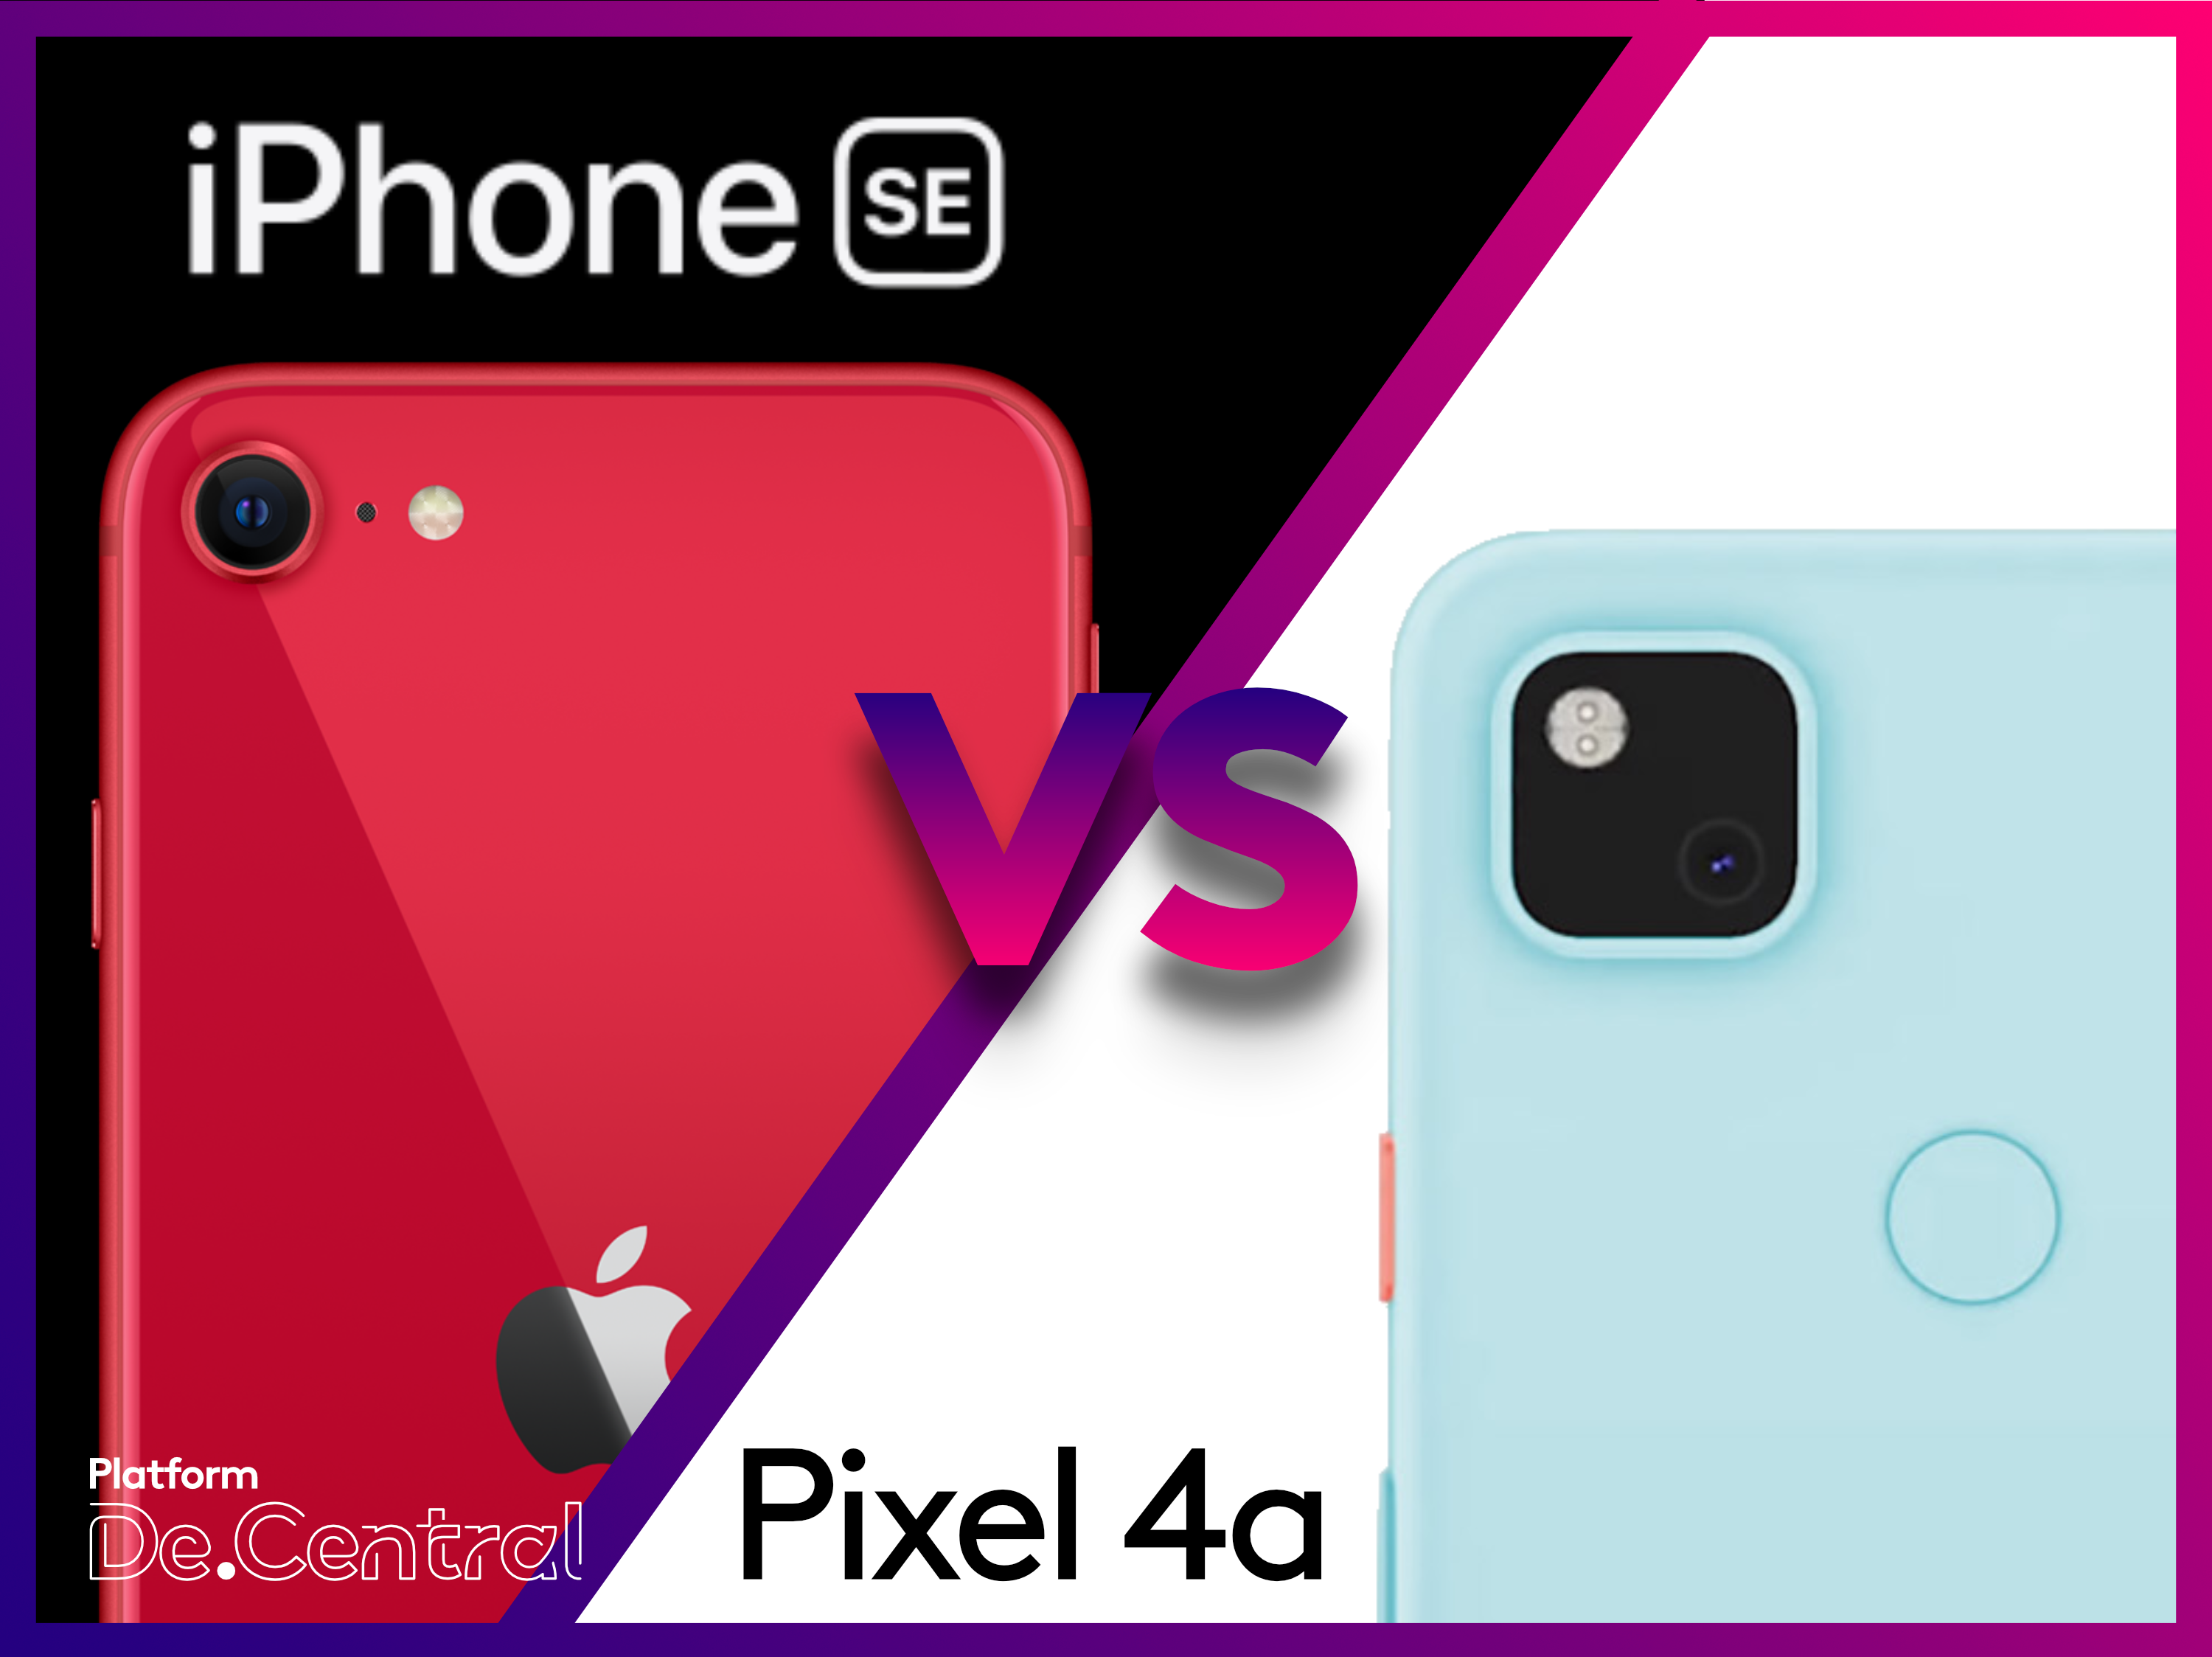 iPhone SE vs Pixel 4a